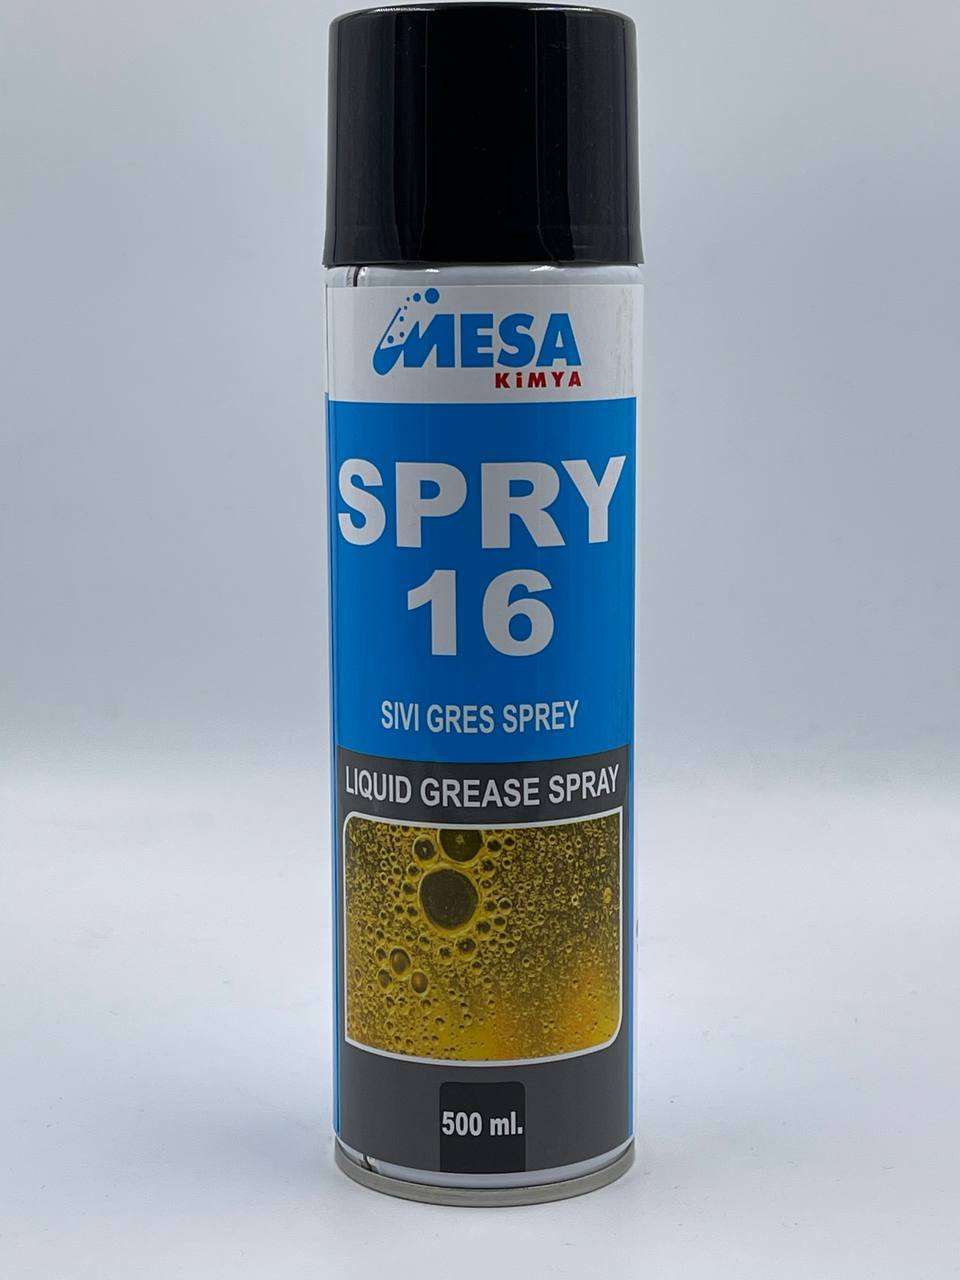 Sıvı gres sprey fiyatLARI SPRY16